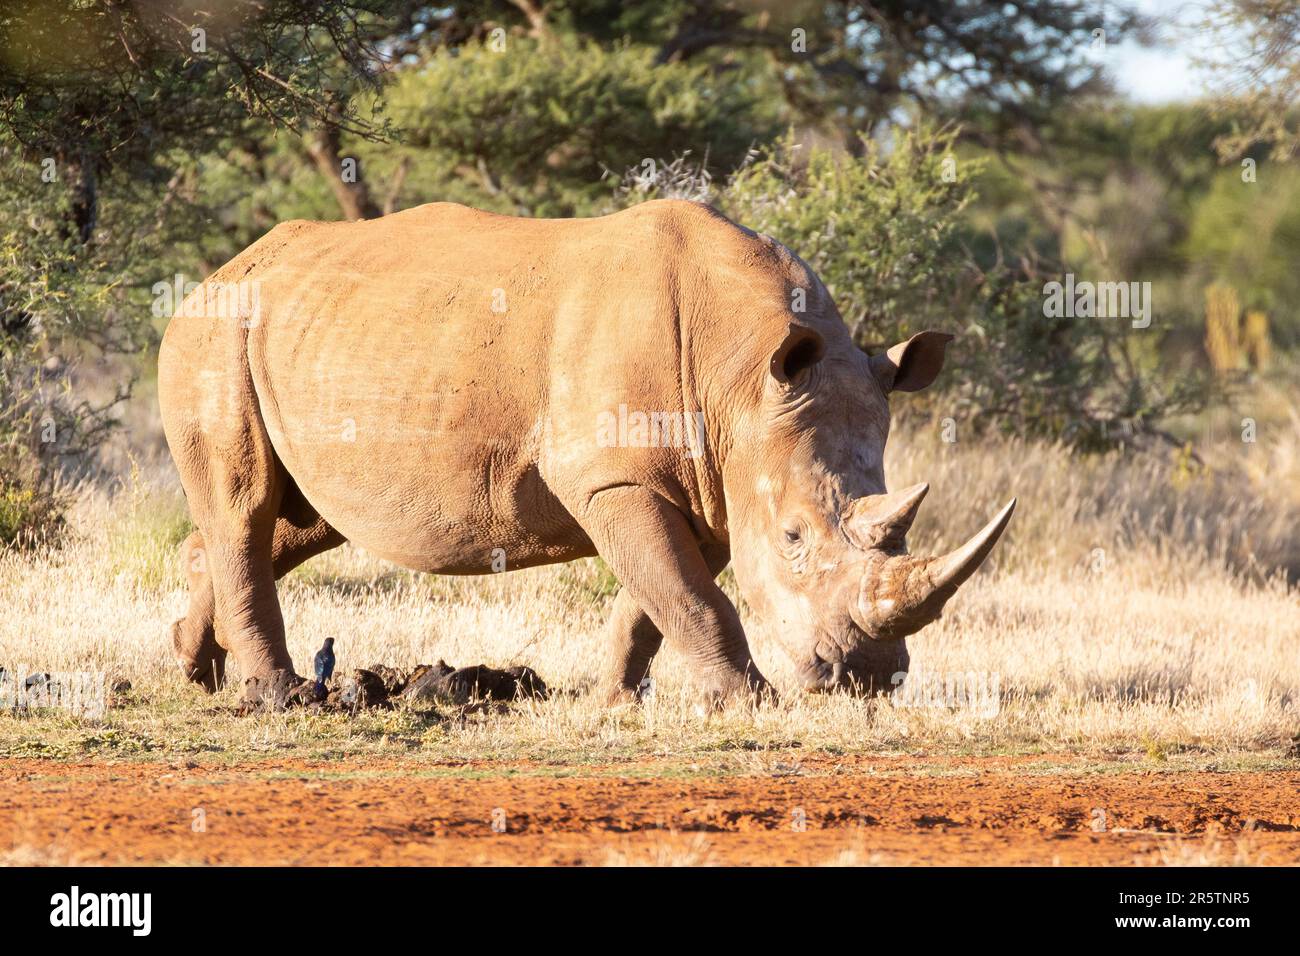 Rhinocéros blancs (Ceratotherium simum) dans la nature en Afrique du Sud. Classé comme une espèce presque menacée, les rhinocéros avec des cornes intactes Banque D'Images